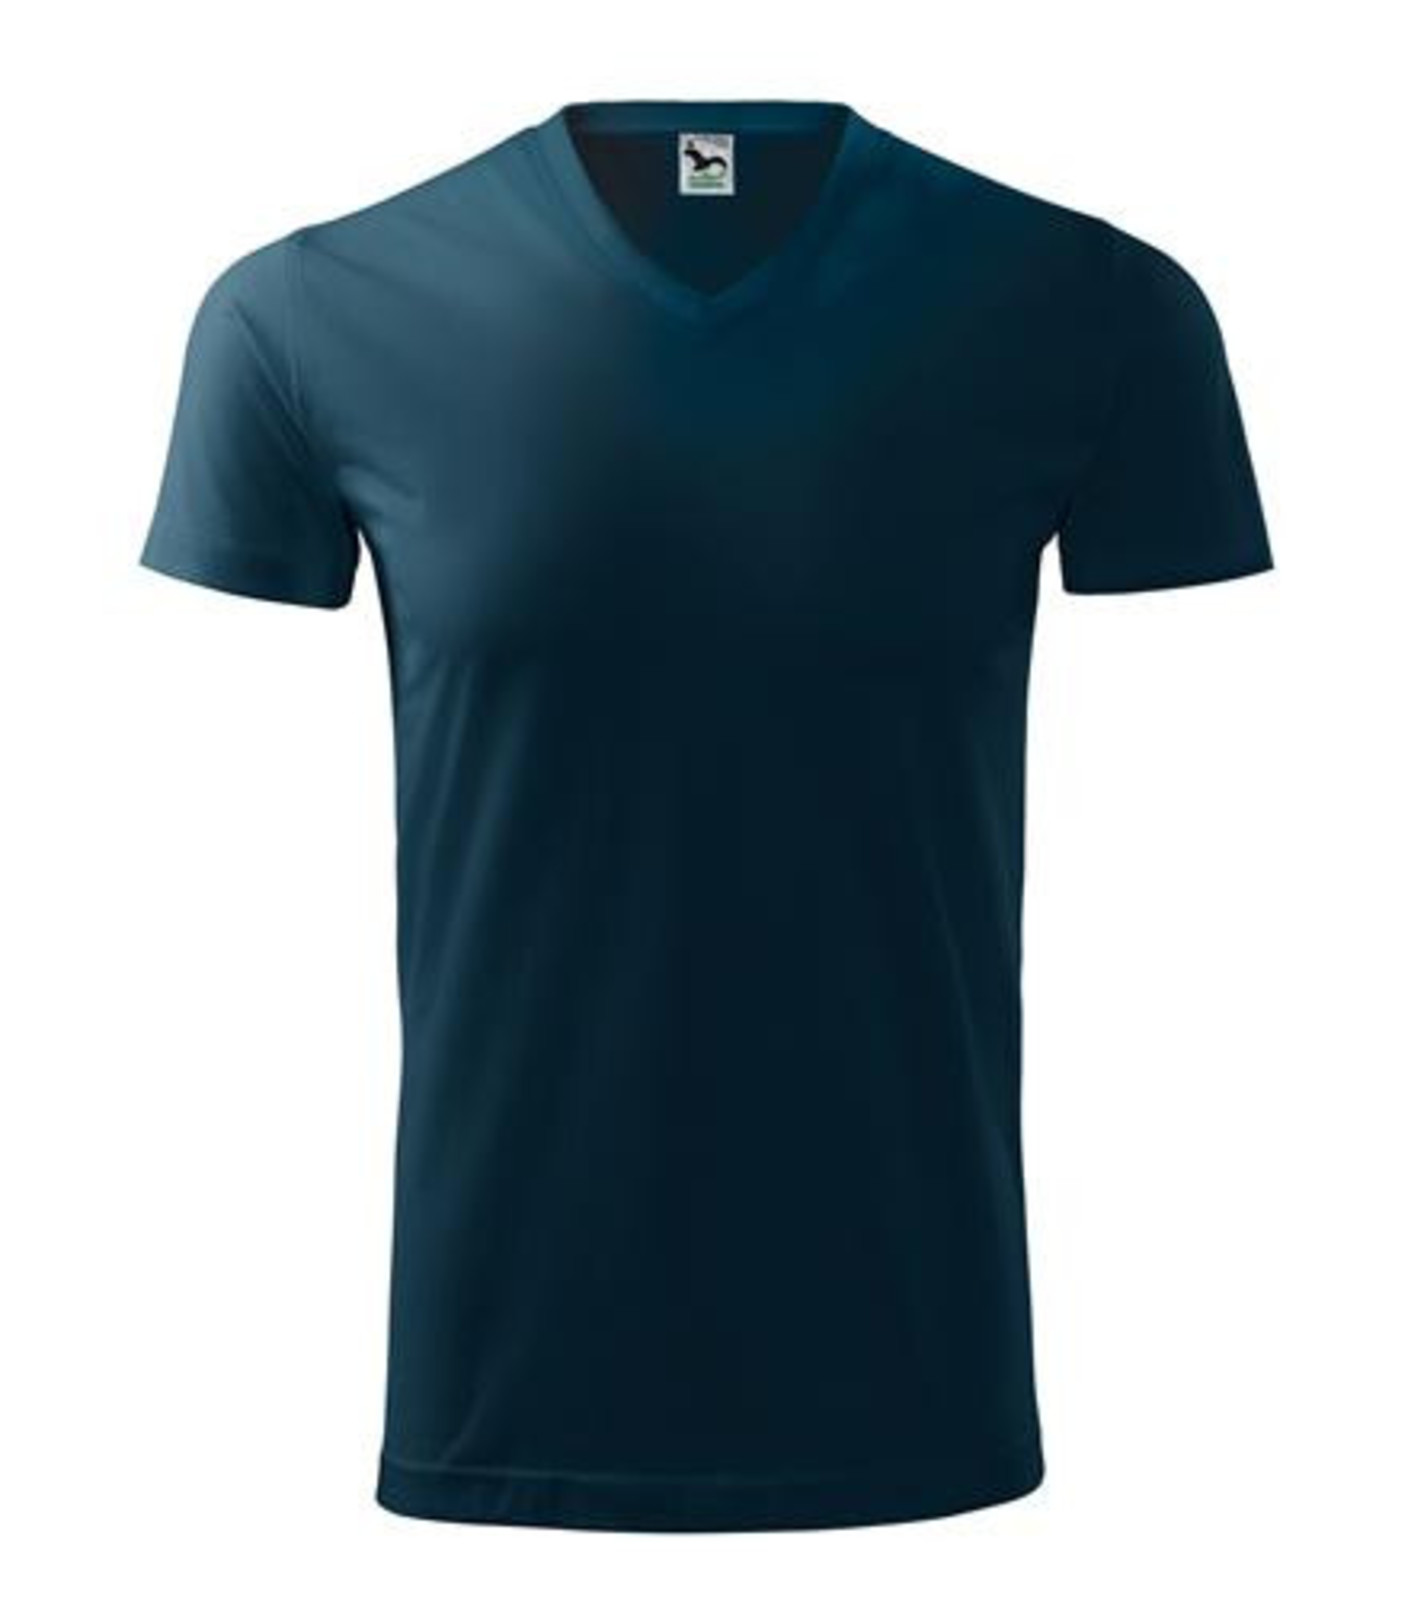 Unisex tričko s V výstrihom Adler Heavy V-Neck 111 - veľkosť: XL, farba: tmavo modrá